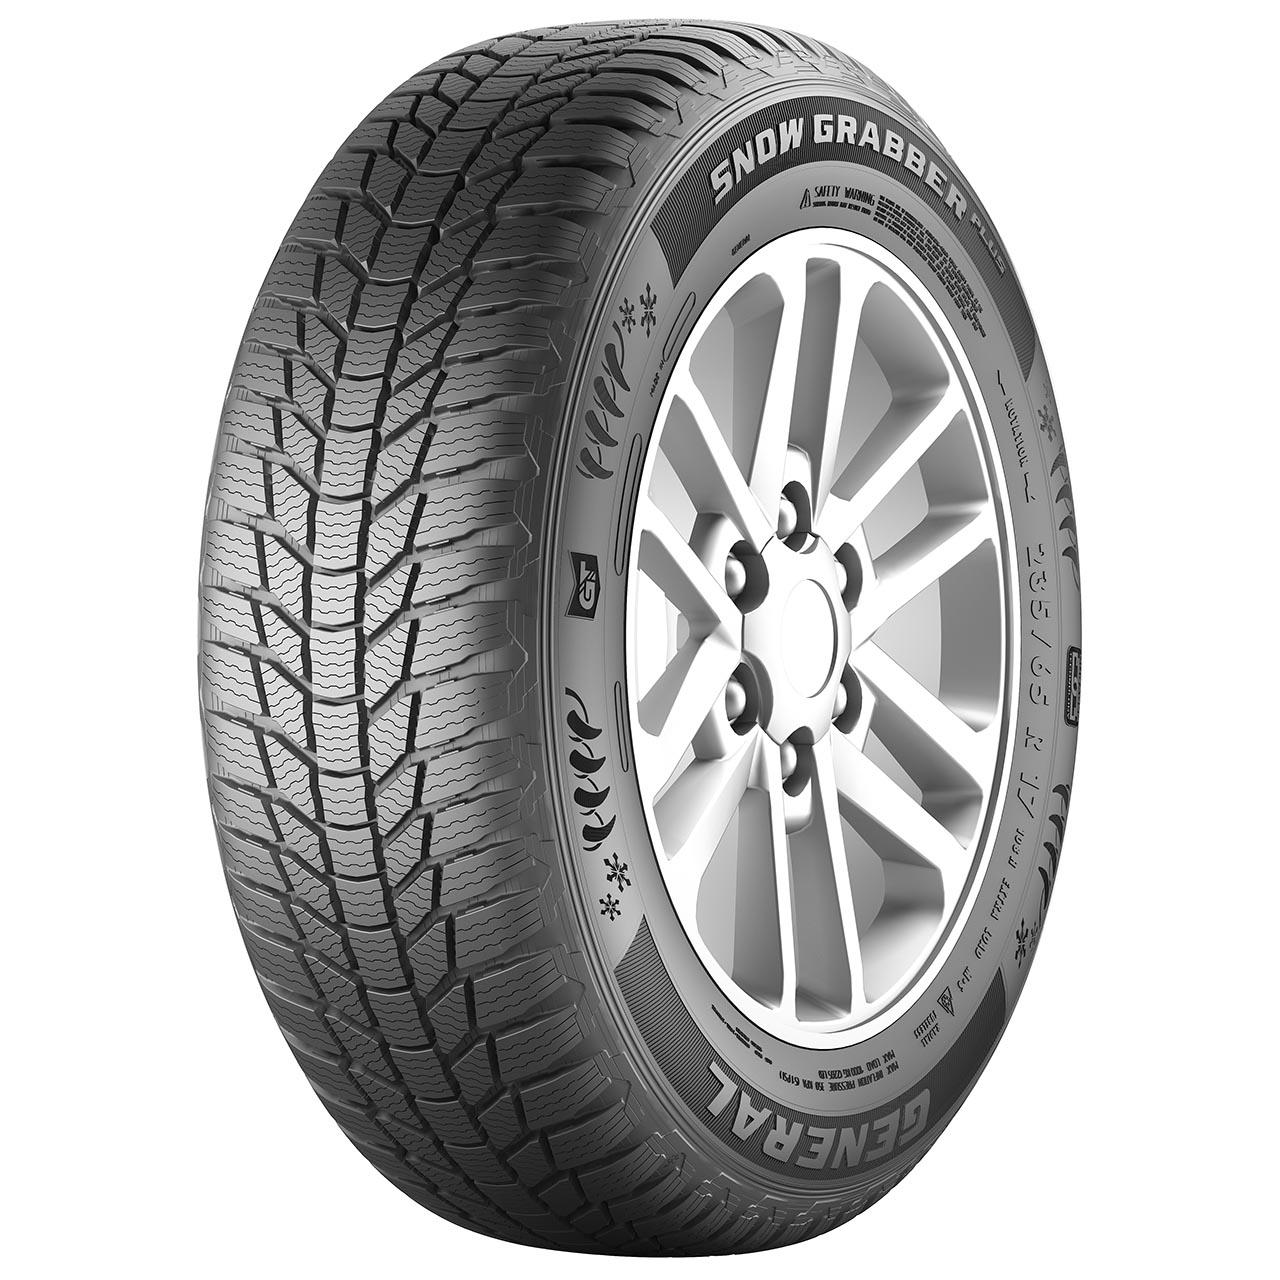 General Tire Snow Grabber Plus 245/70R16 107T FR